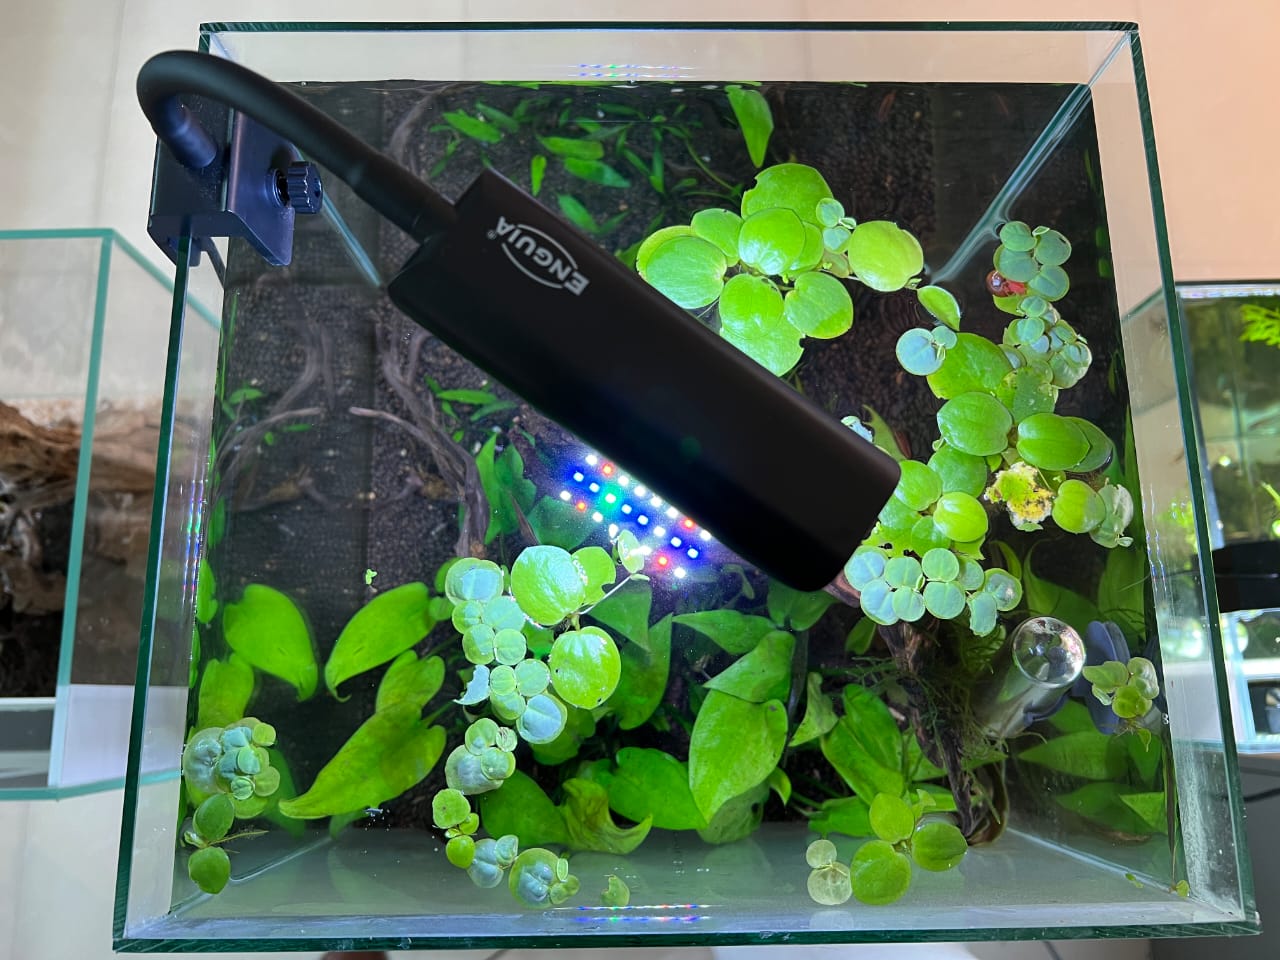 Enguia Wrgb Dimmable Aquarium nano Led Light 15cm to 30cm - Petsgool Online